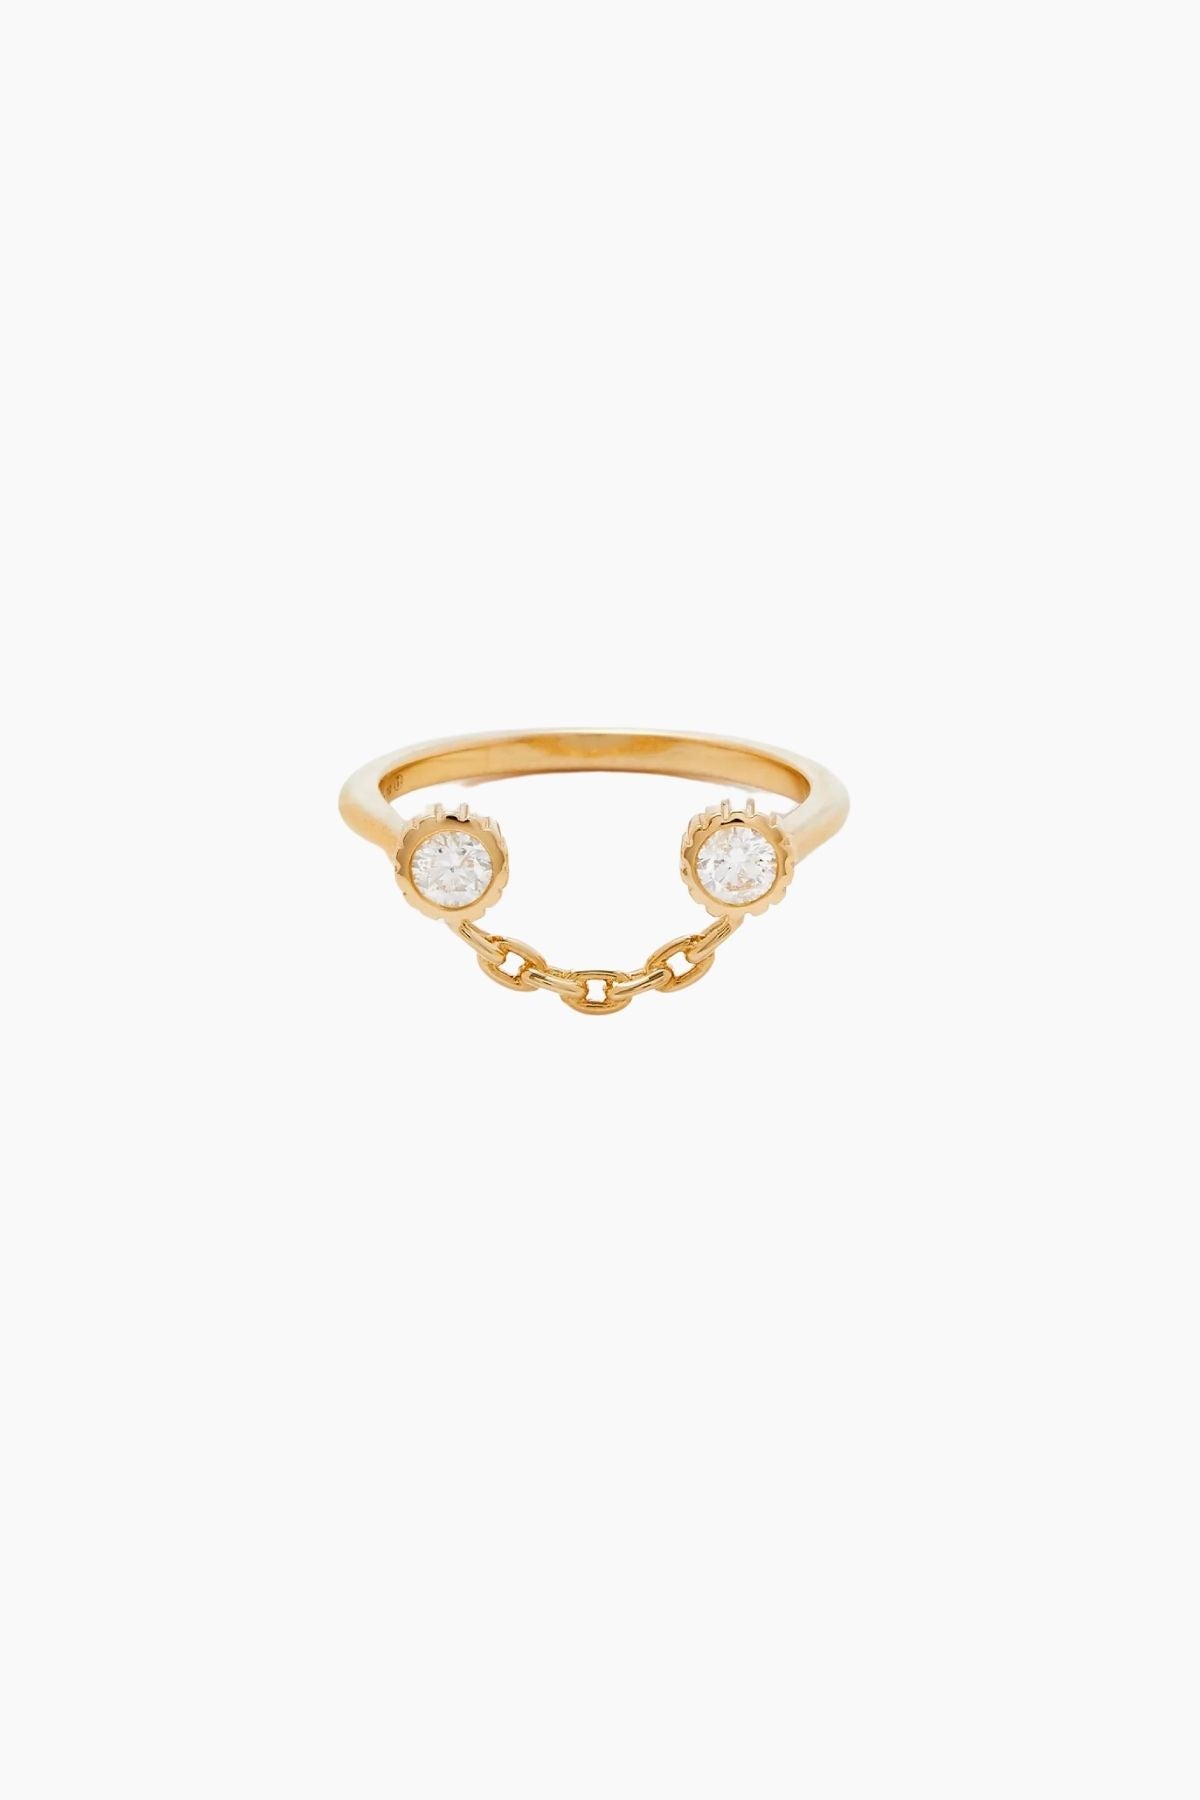 Yvonne Léon Sourire Diamond Ring - Yellow Gold